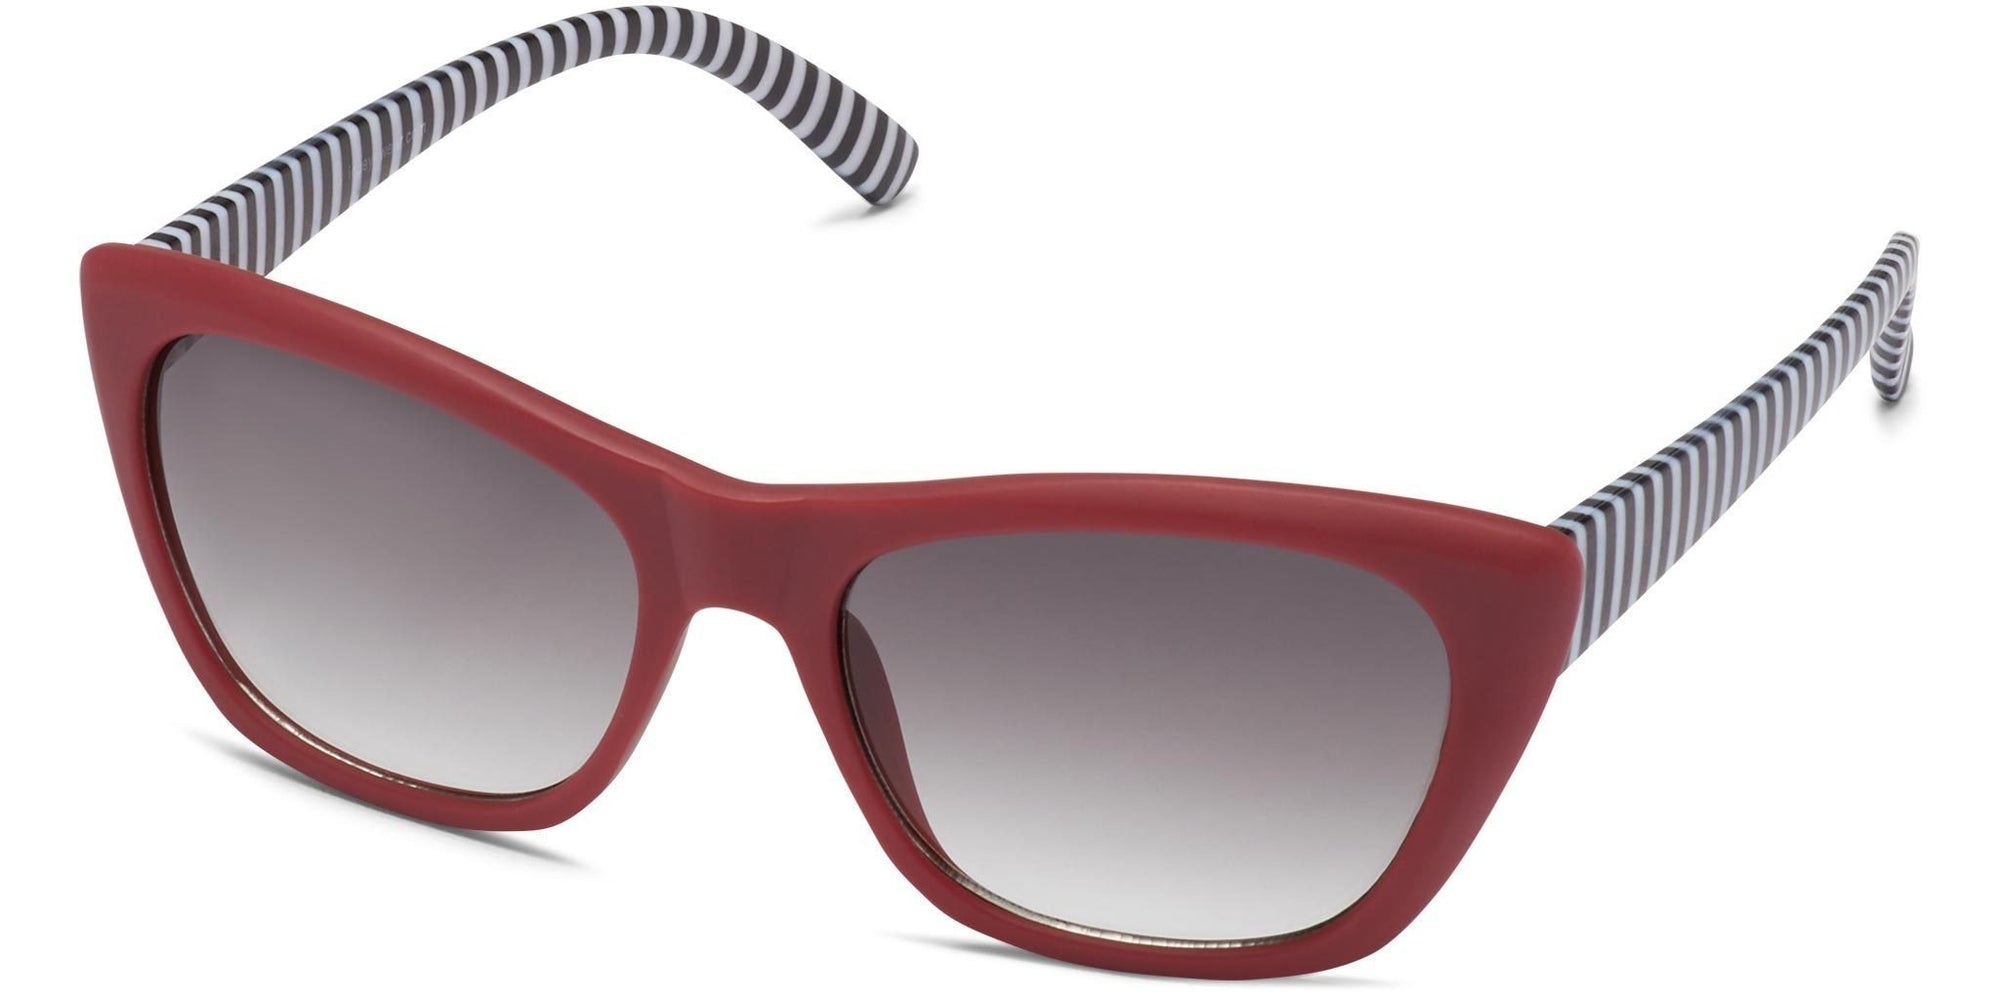 Grayton - Red/Black/Gray Lens - Sunglasses